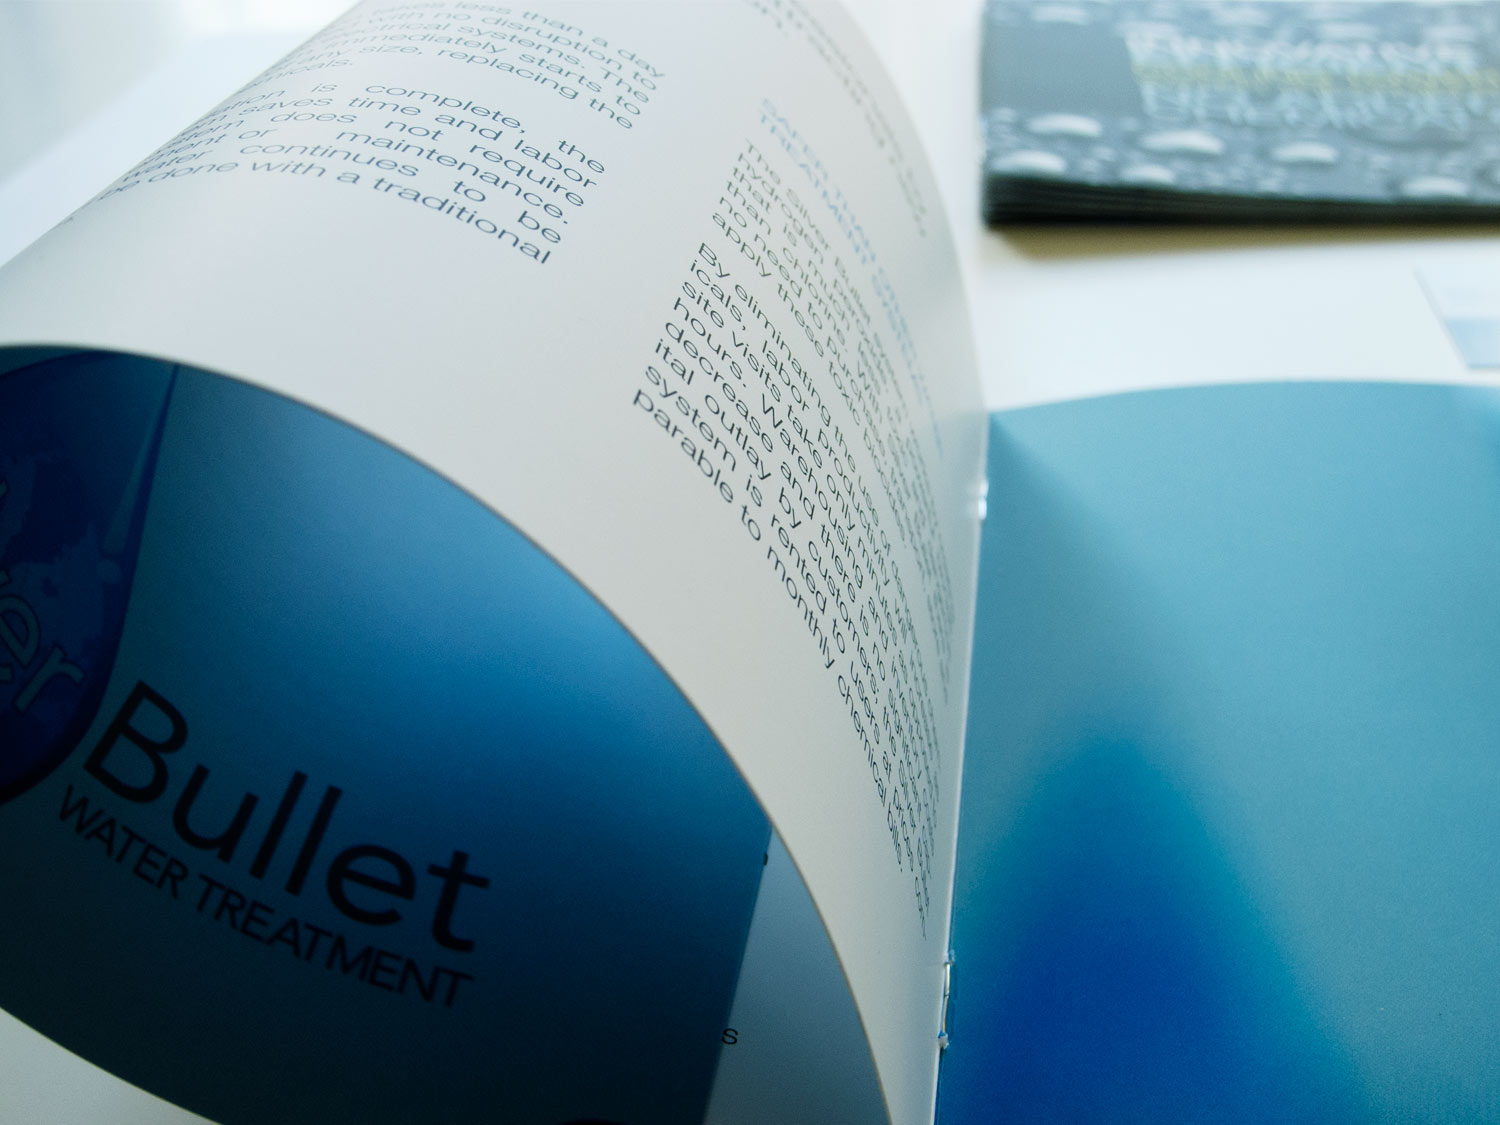 Silver Bullet Brochure- Details